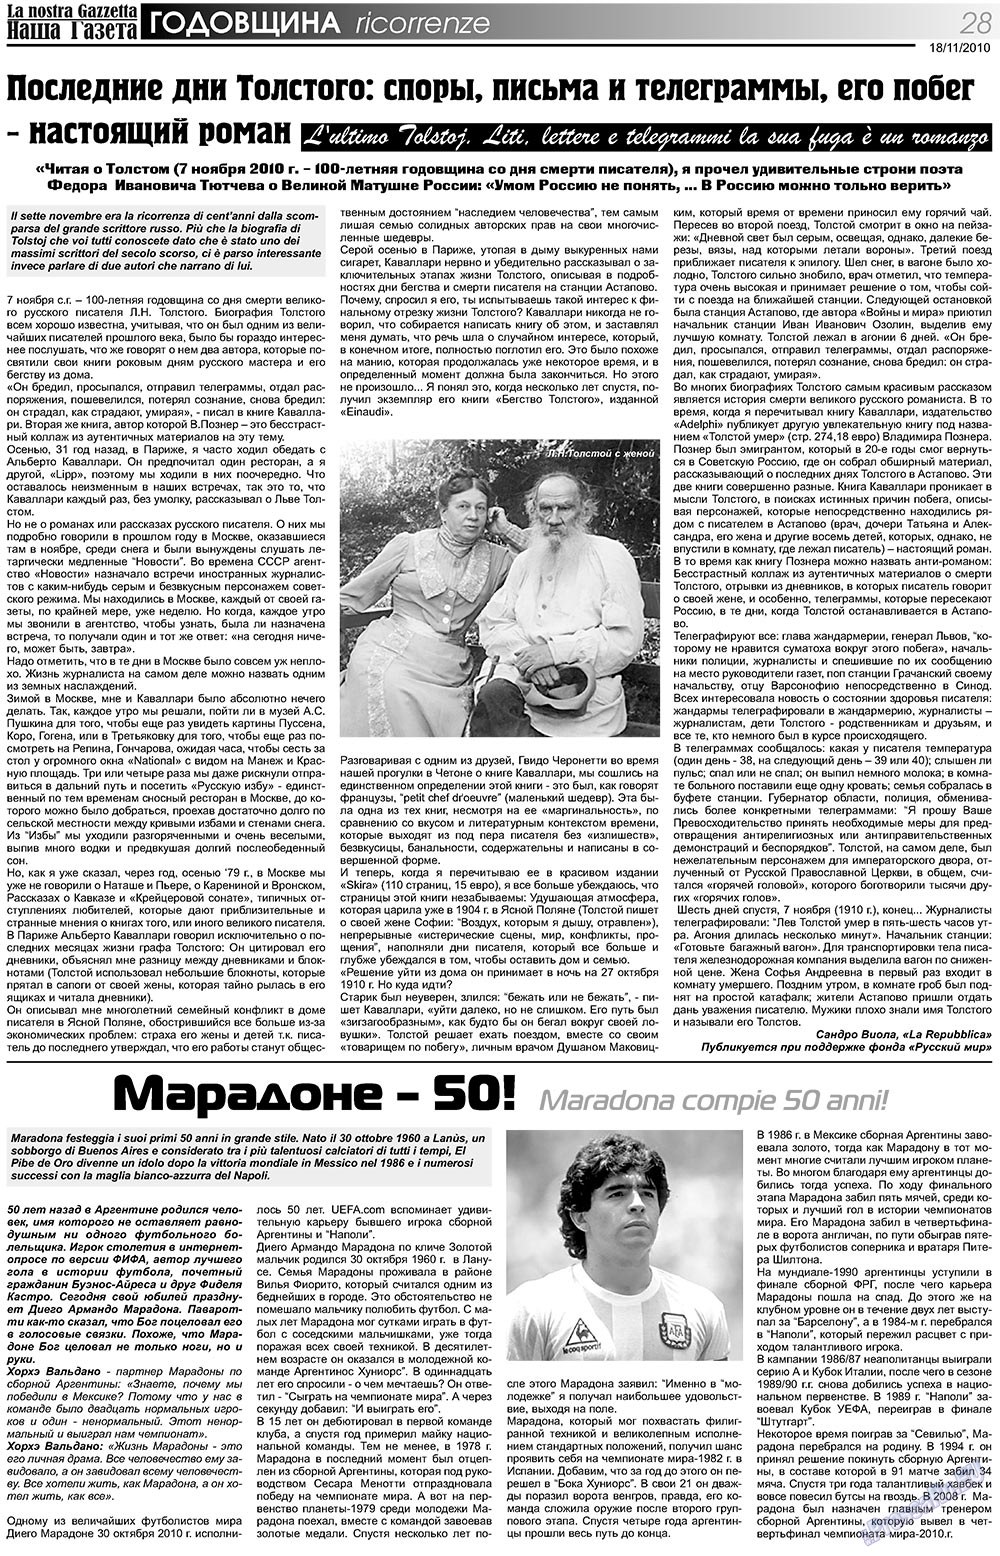 Наша Газета Италия (газета). 2010 год, номер 121, стр. 28